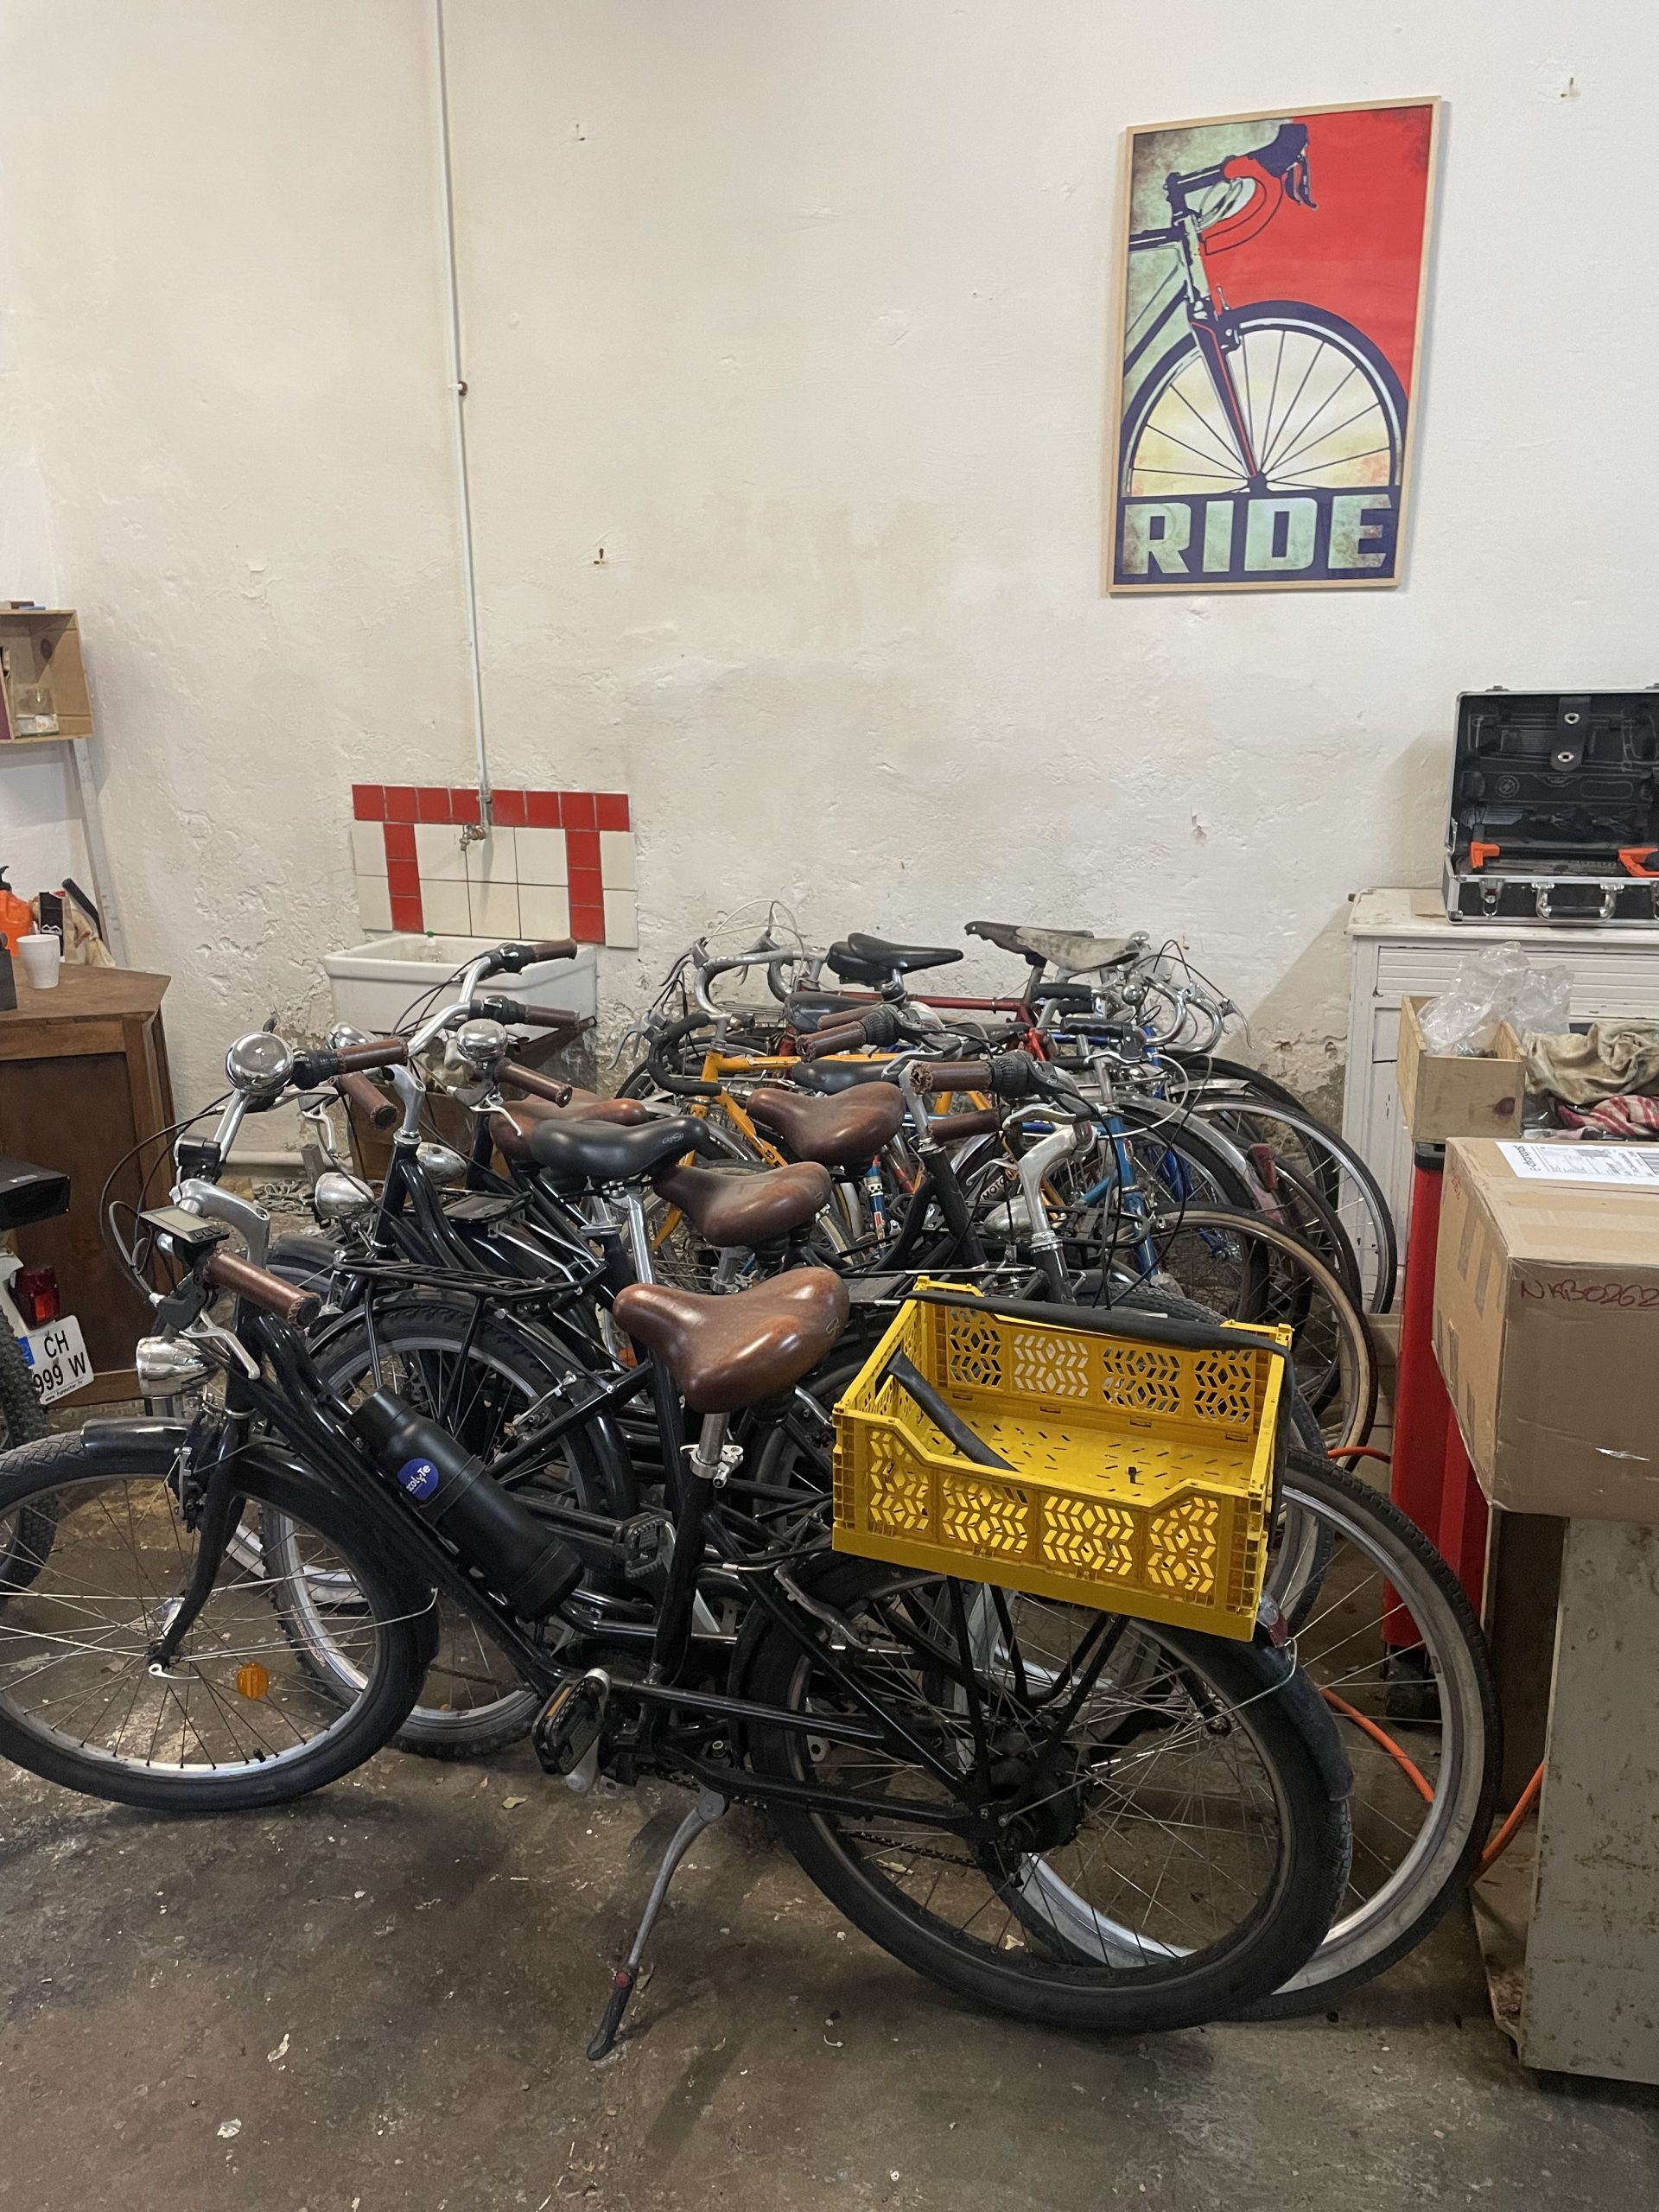 Le stock de vélos de Léonard, contre le mur de son garage, en attente de réparation ou d'électrification. Un cadre représentant une roue de vélo surplombe le tout.